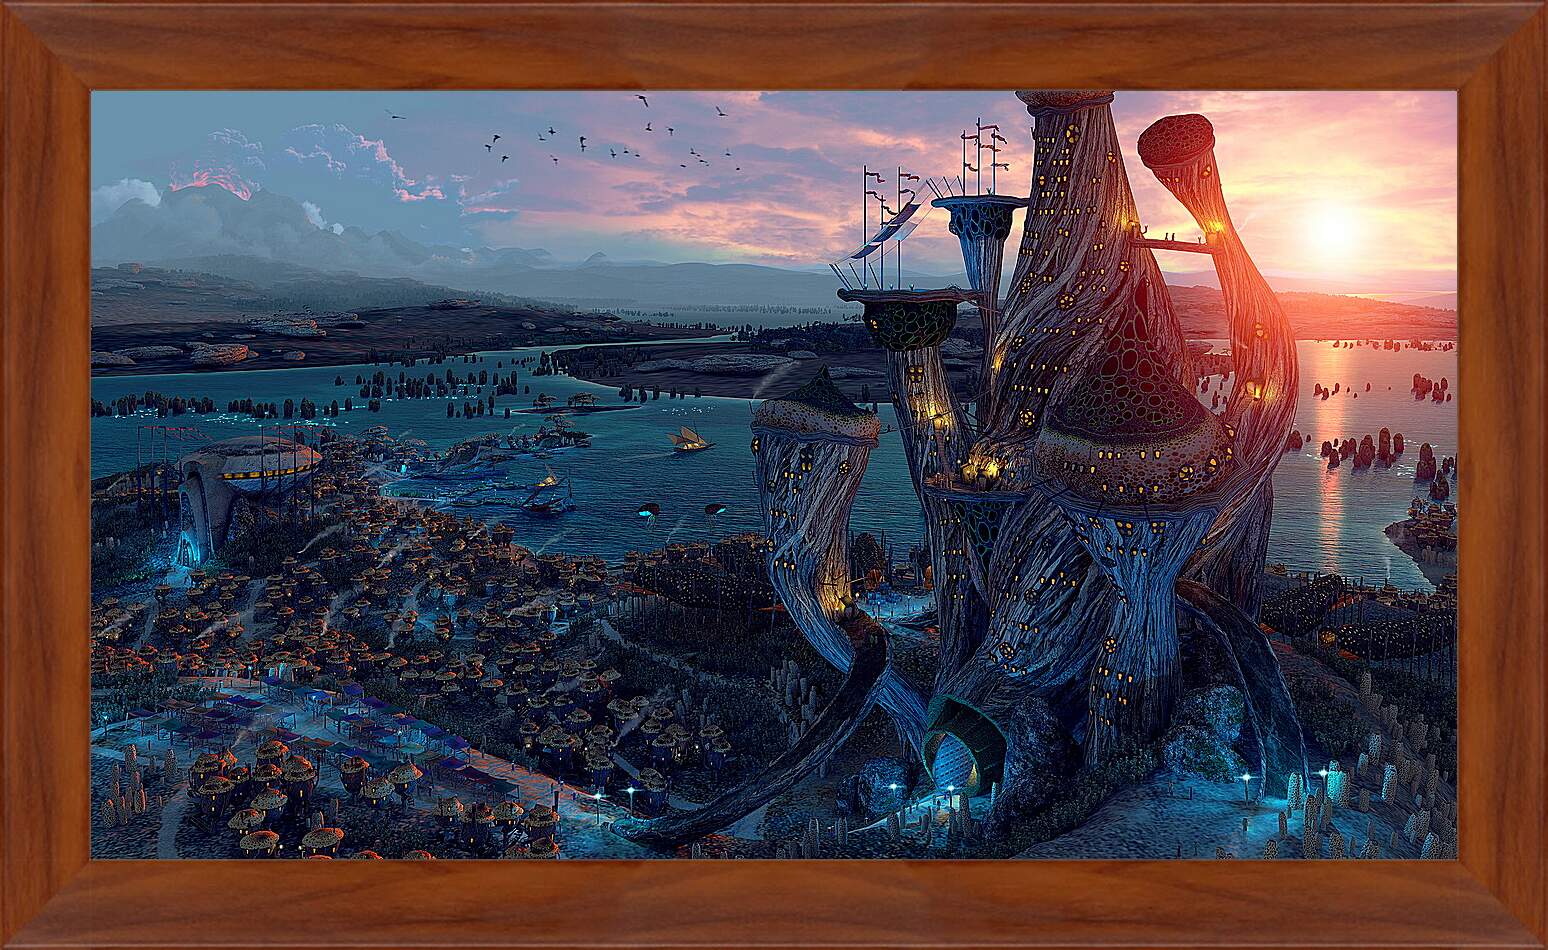 Картина в раме - The Elder Scrolls III: Morrowind
